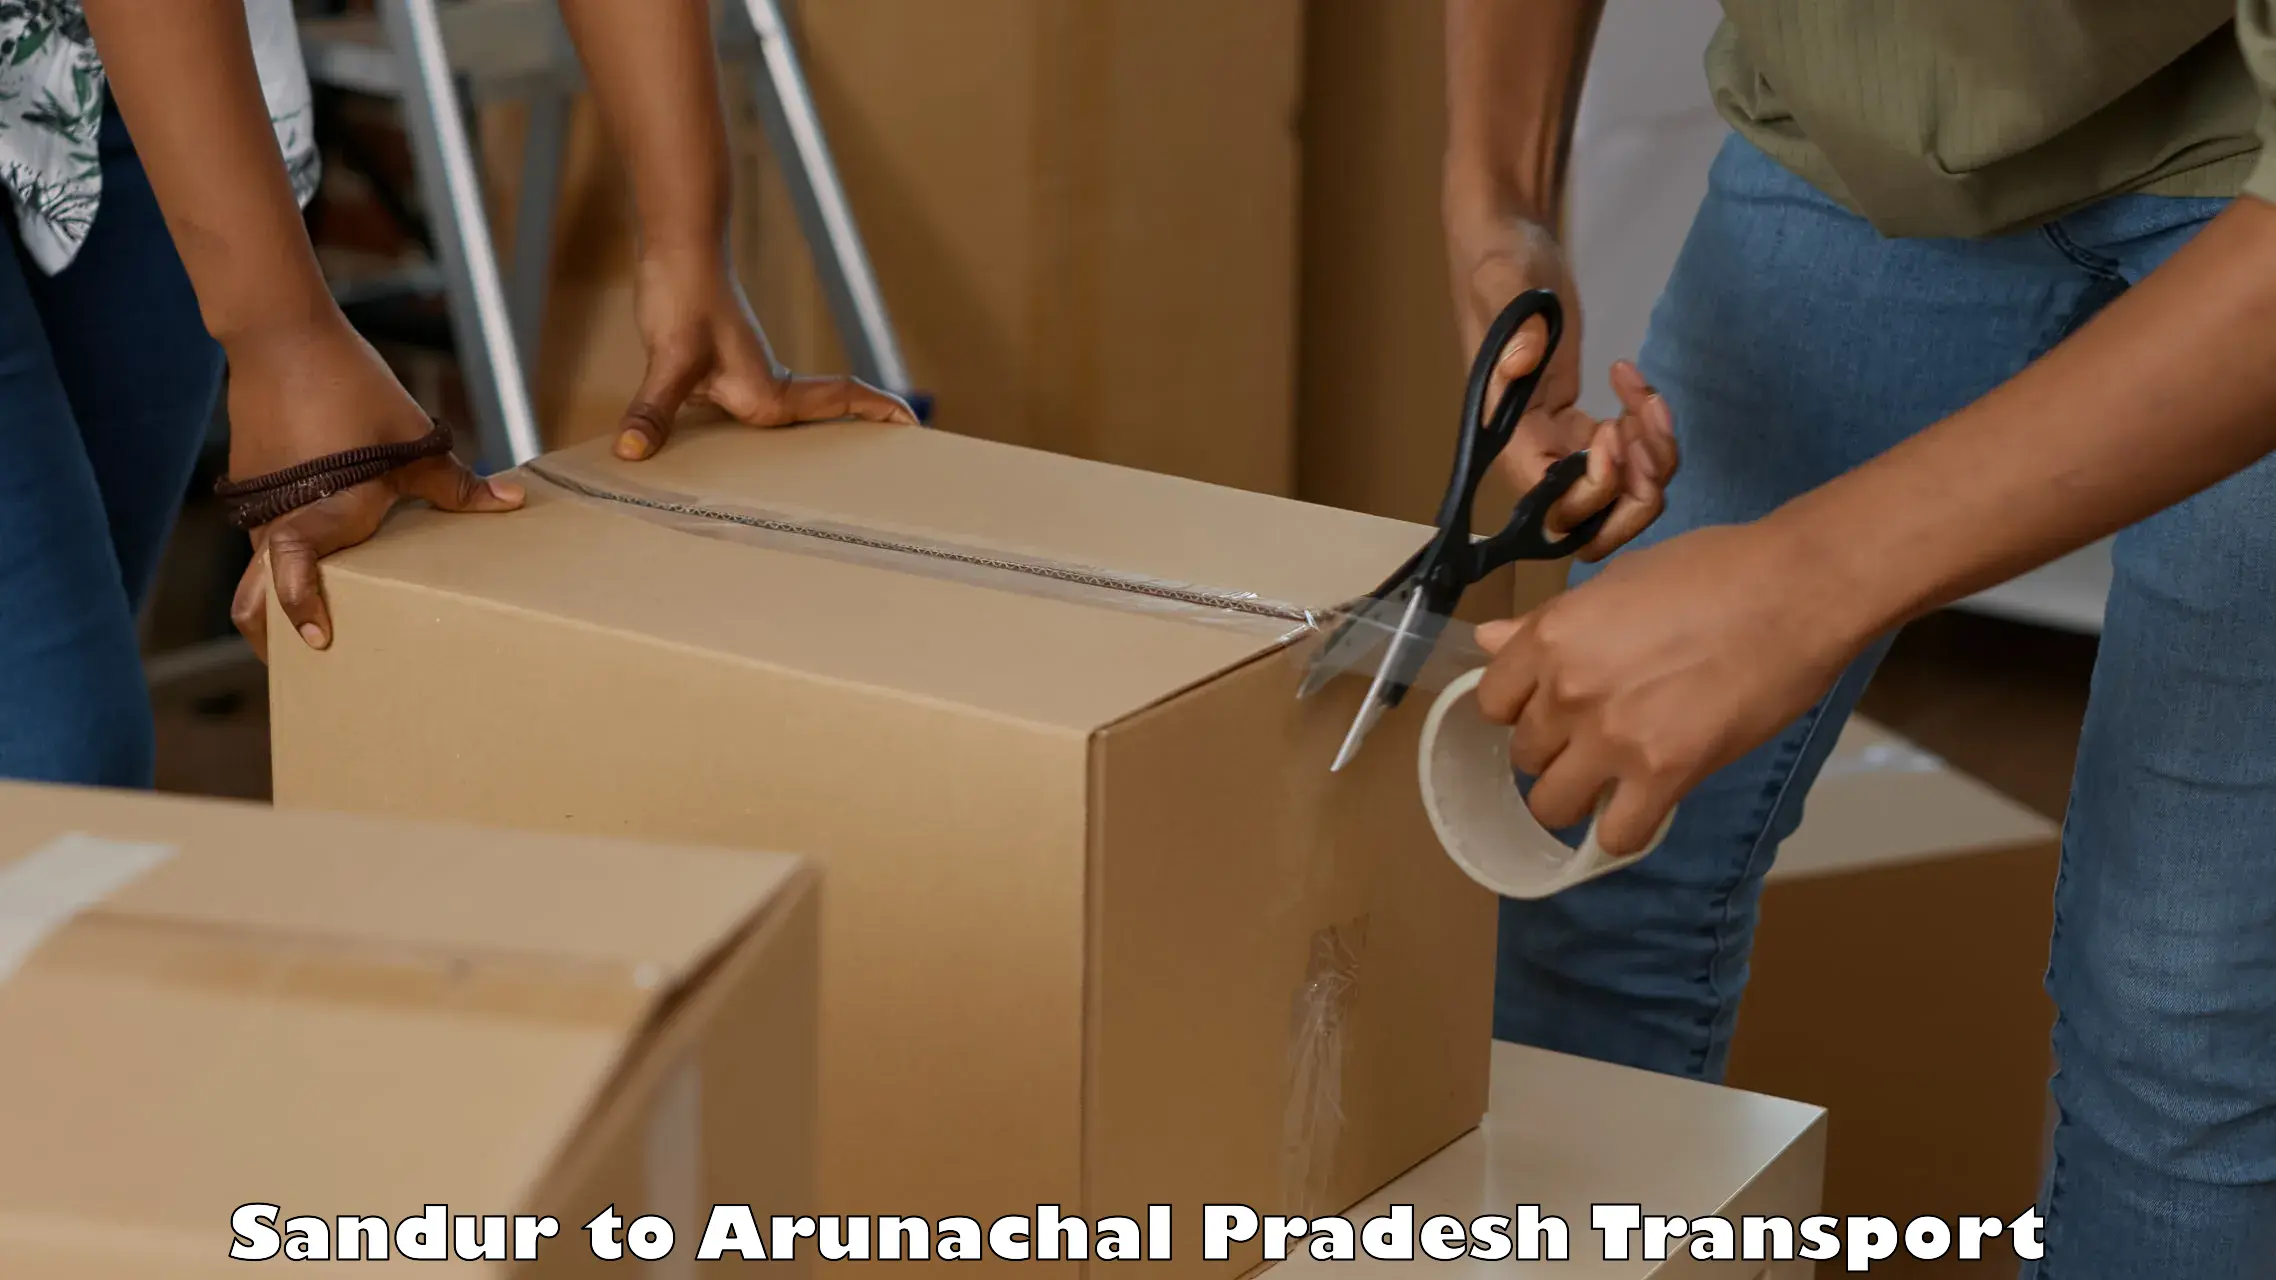 Part load transport service in India Sandur to Arunachal Pradesh